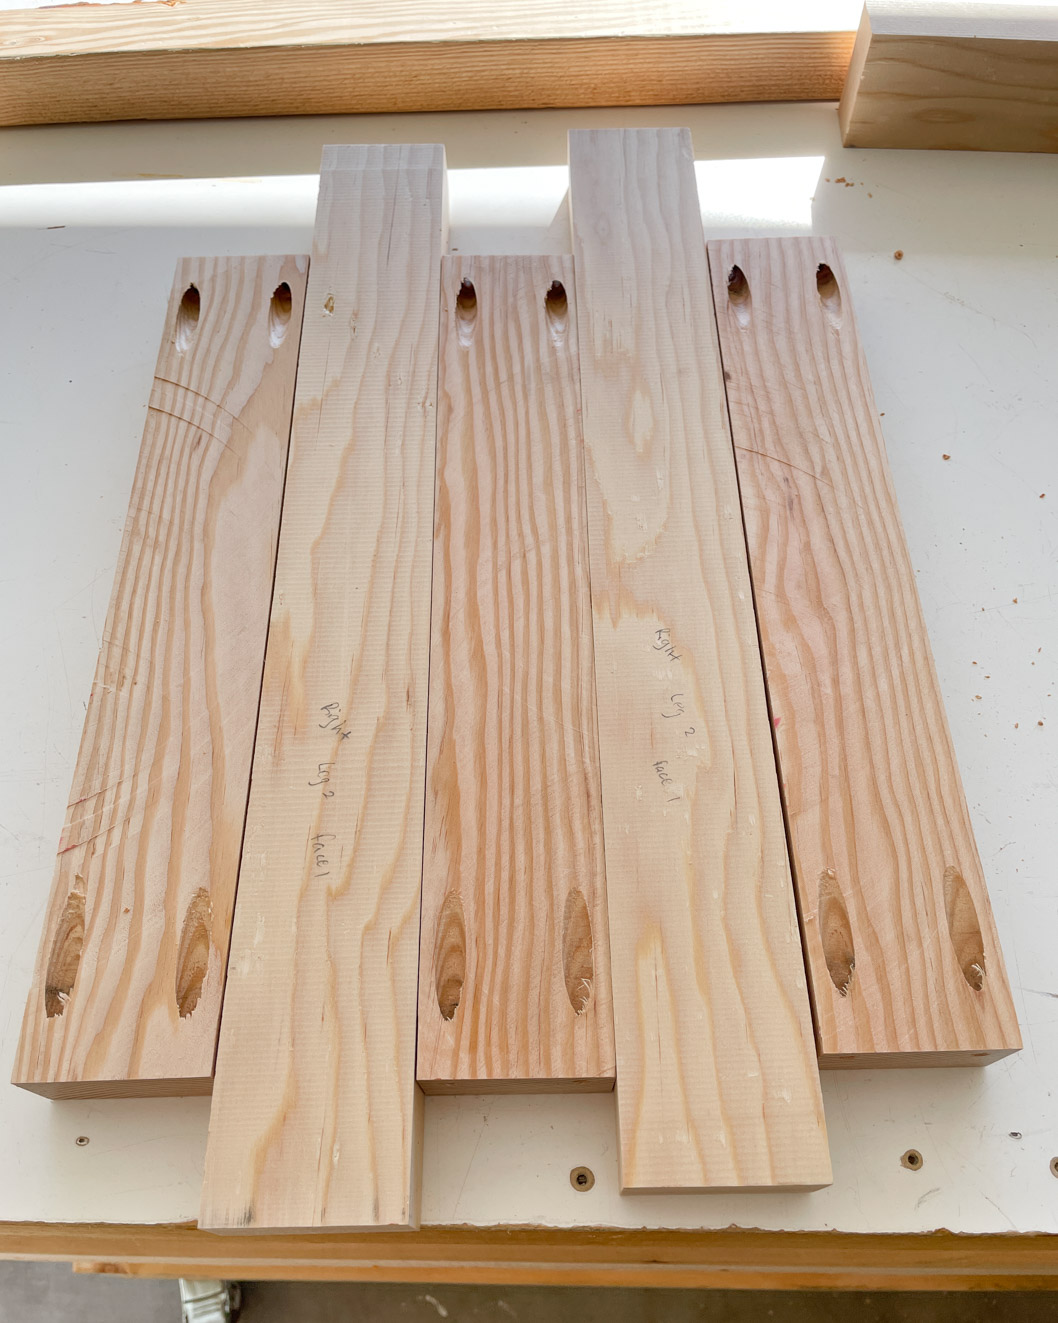 Lumber for DIY storage bench